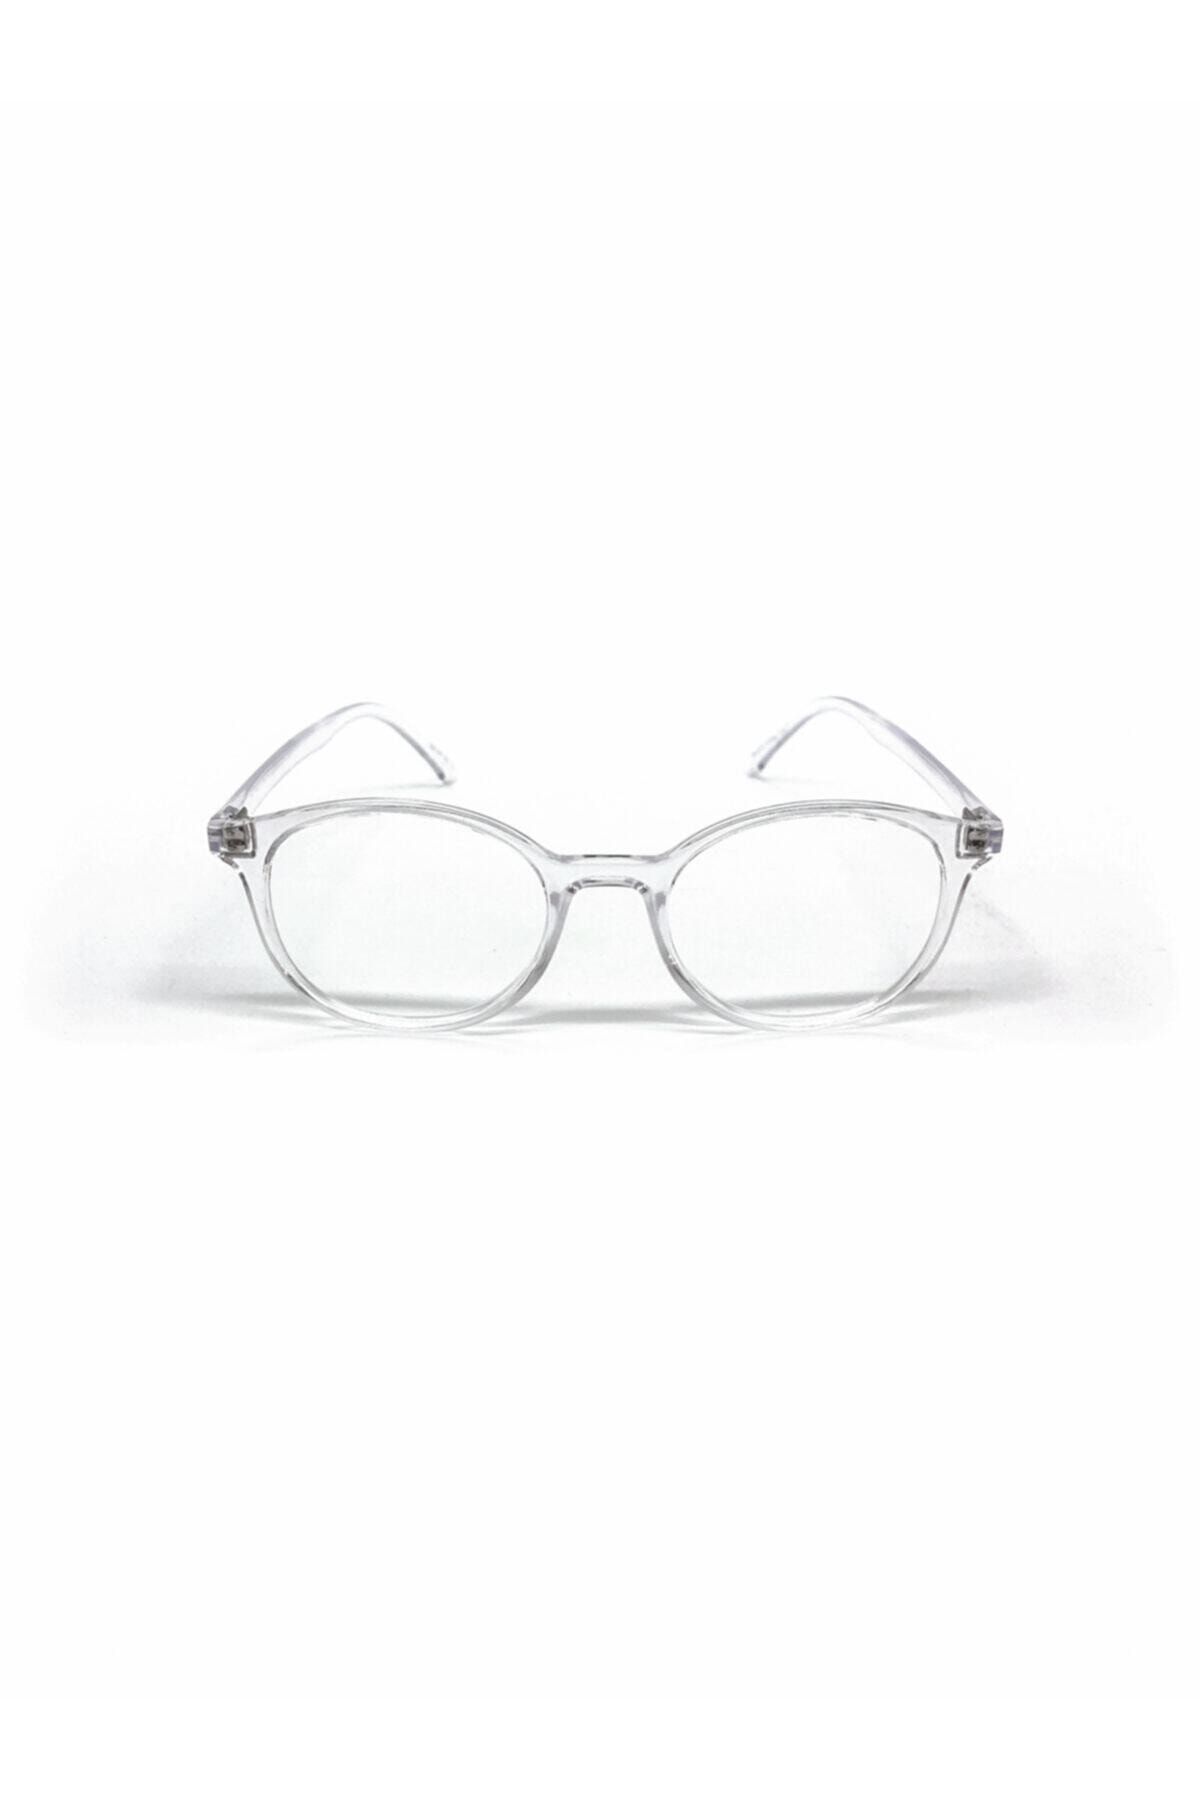 BLOCKED Unisex Çocuk Numarasız Mavi Işık Engelleme Gözlük Bilgisayar Gözlükleri Uv400